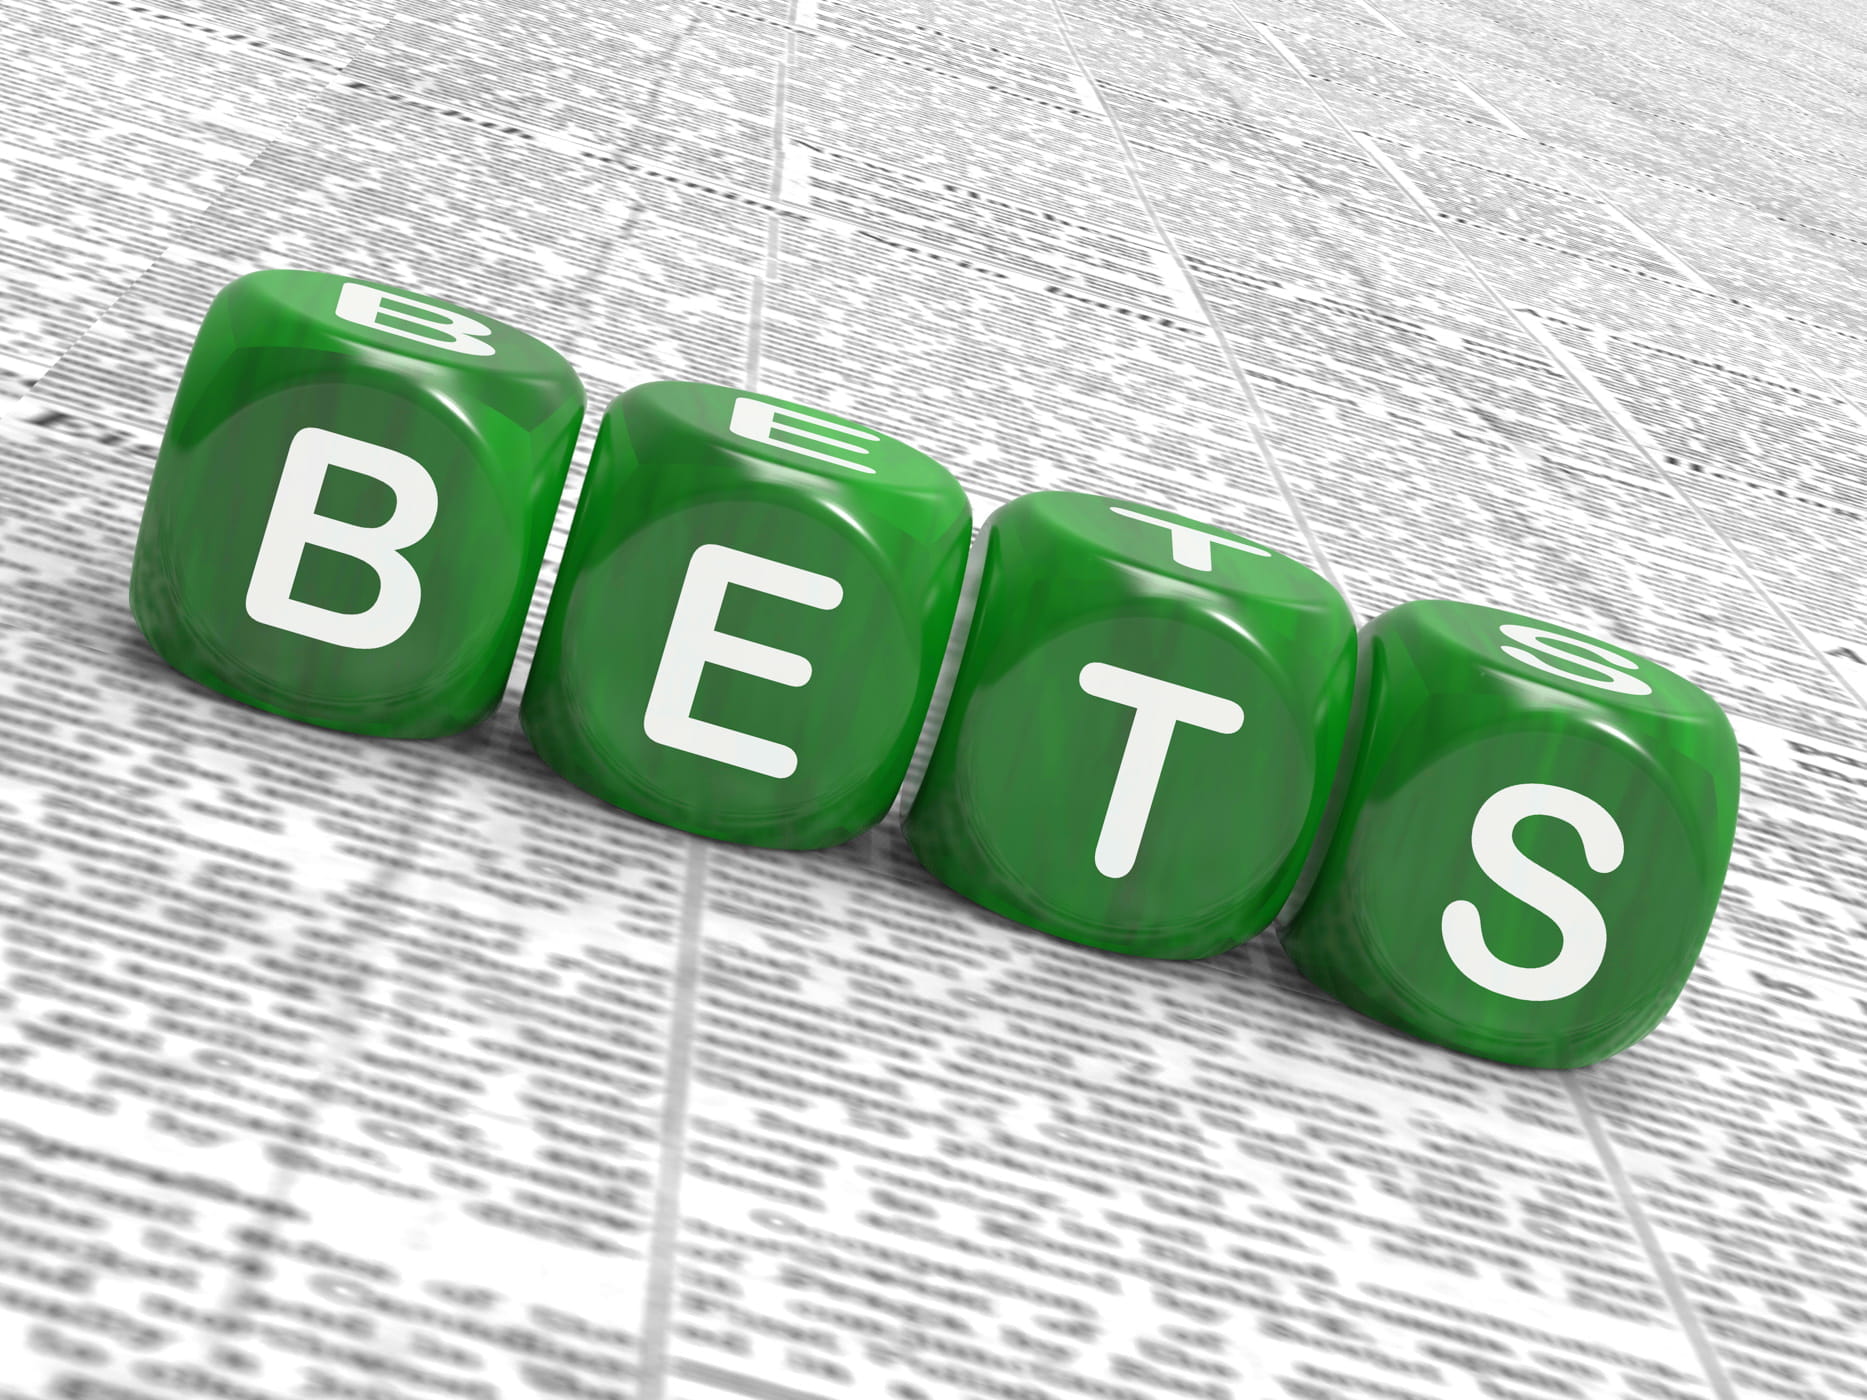 Quattro dadi verdi compongono la scritta “bets”